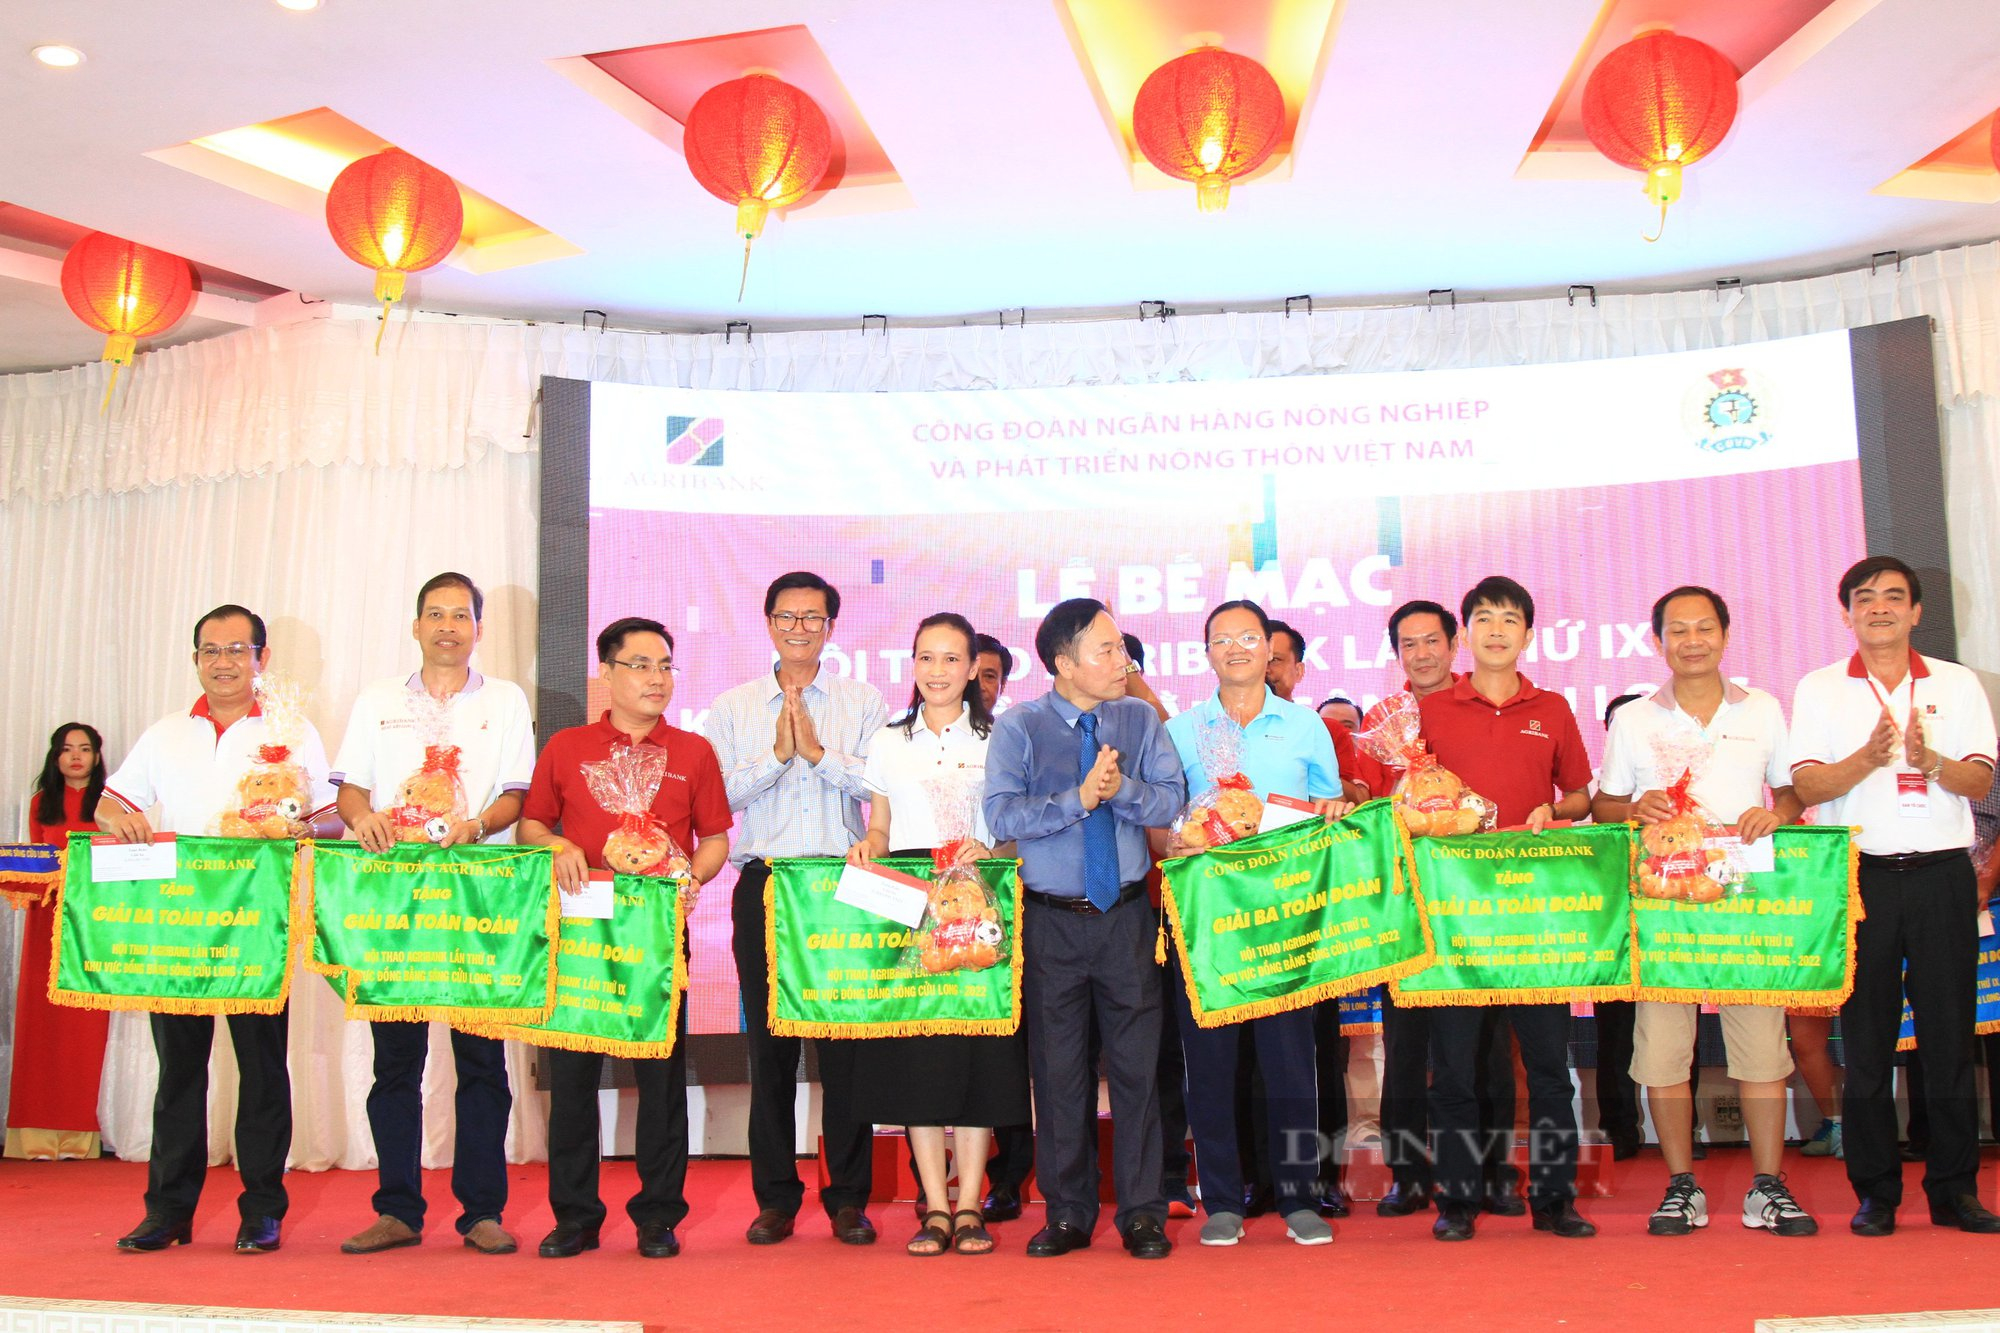 Đoàn Agribank chi nhánh An Giang giành giải Nhất toàn đoàn tại Hội thao Agribank lần thứ IX khu vực ĐBSCL - Ảnh 3.